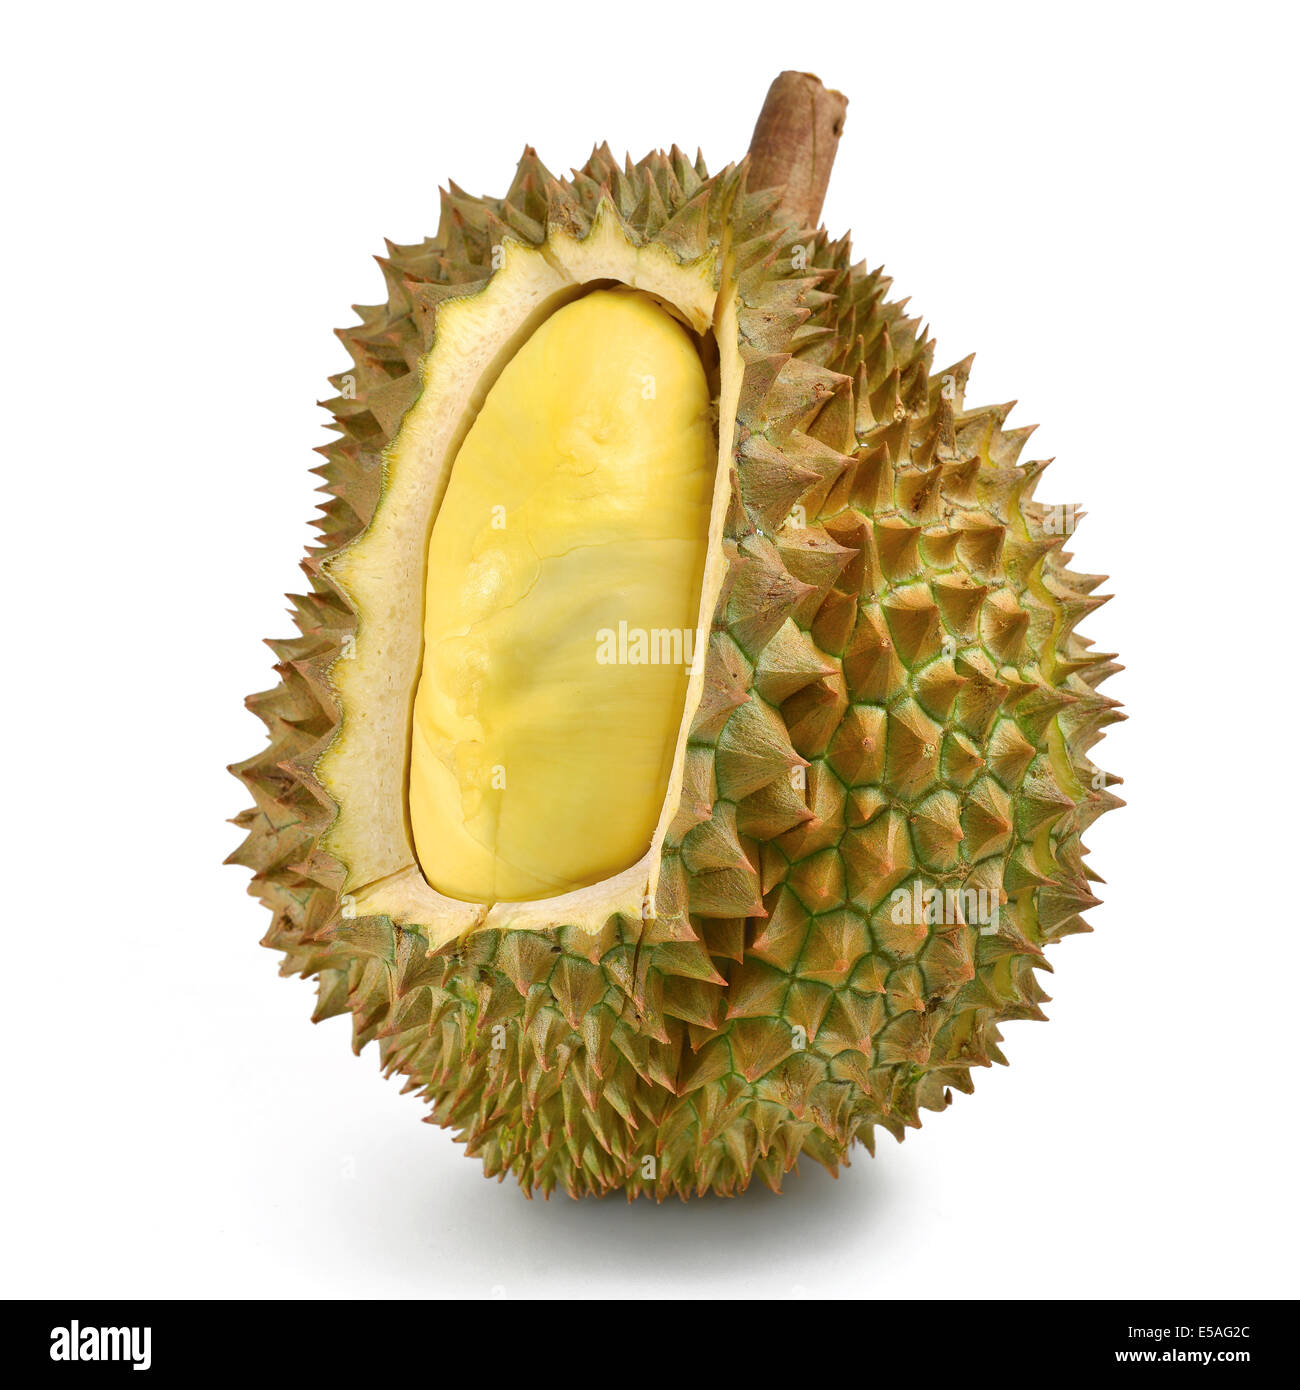 peeled durian isolated on white Stock Photo